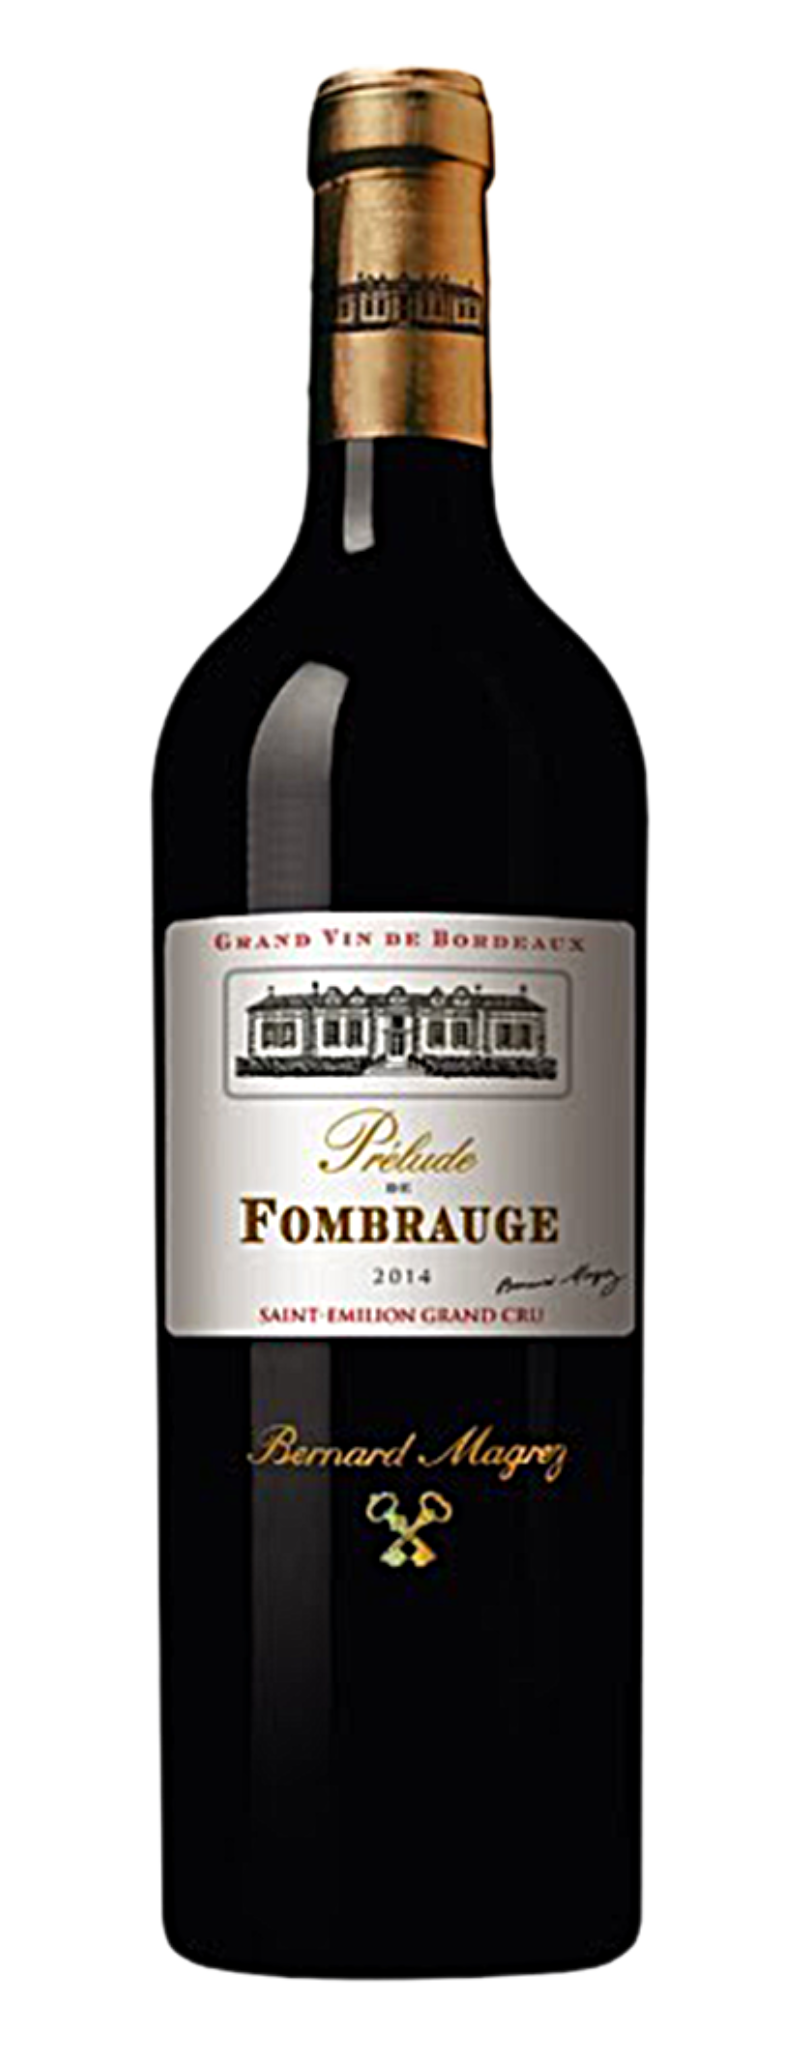 Prelude de Fombrauge 2nd wine St Emilion Grand Cru  - 750ml